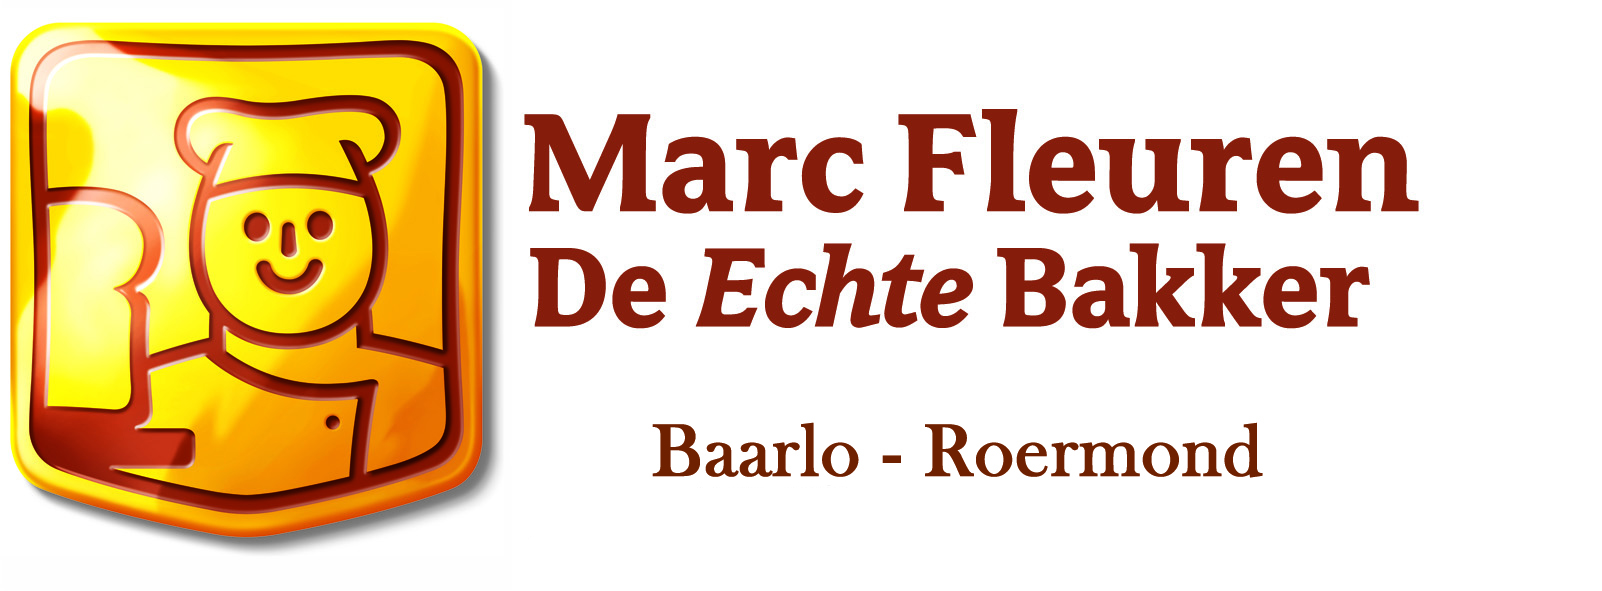 Marc Fleuren logo groot